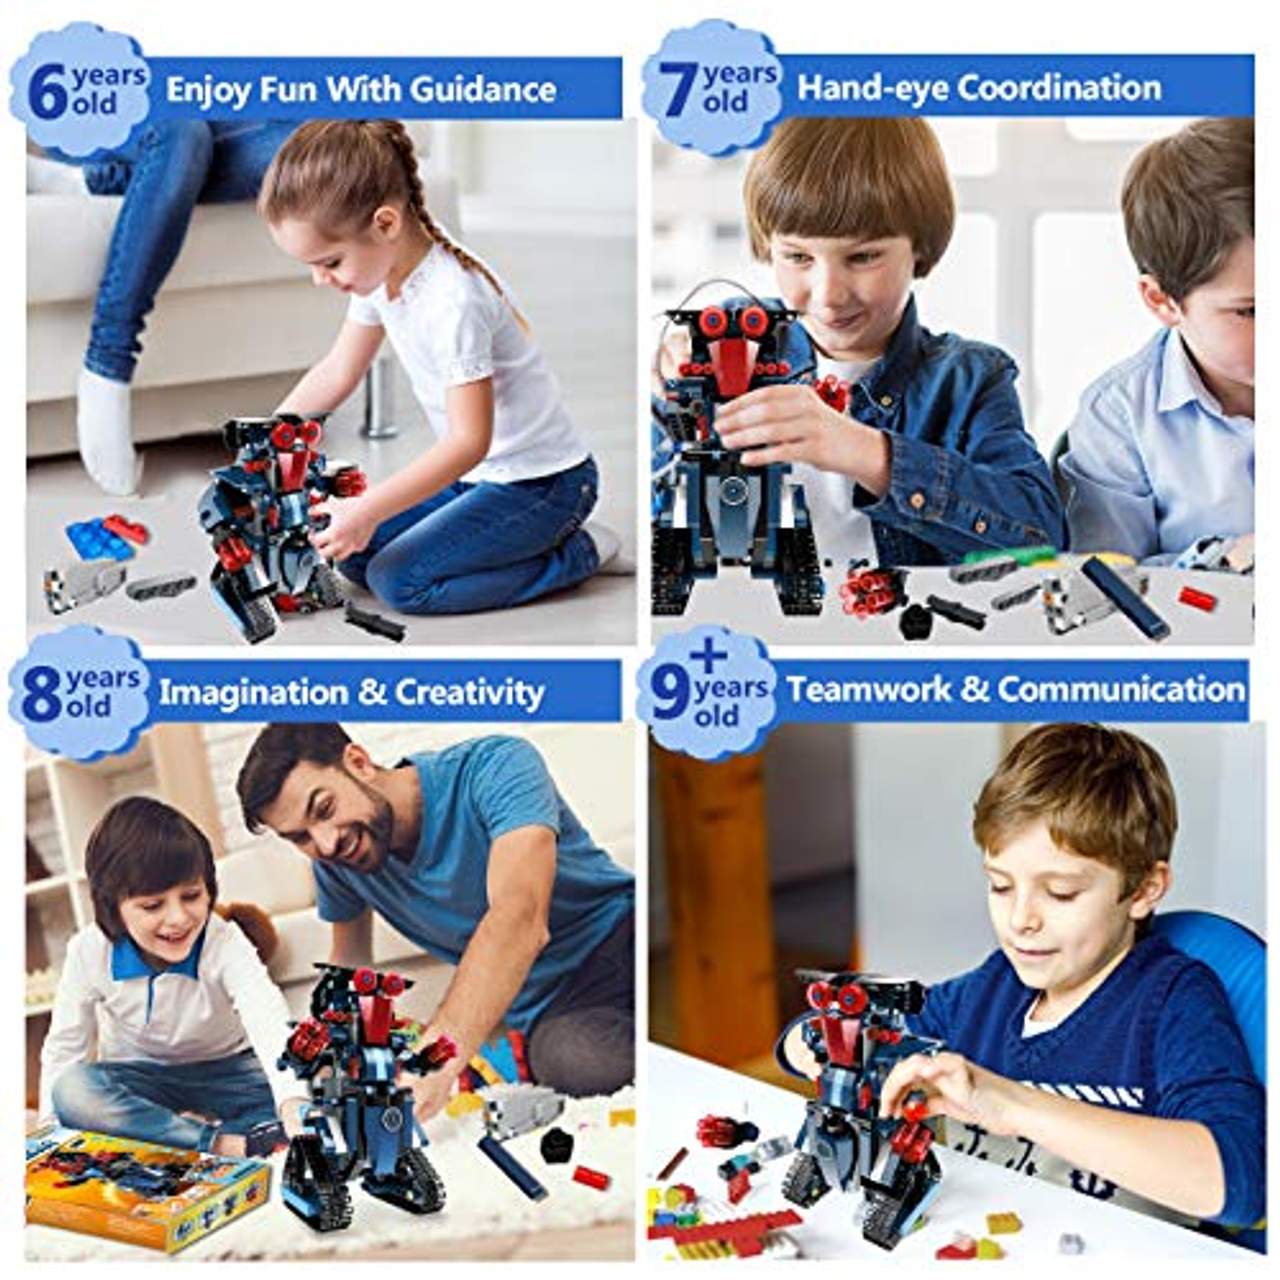 Baustein Roboter Spielzeug Kinder